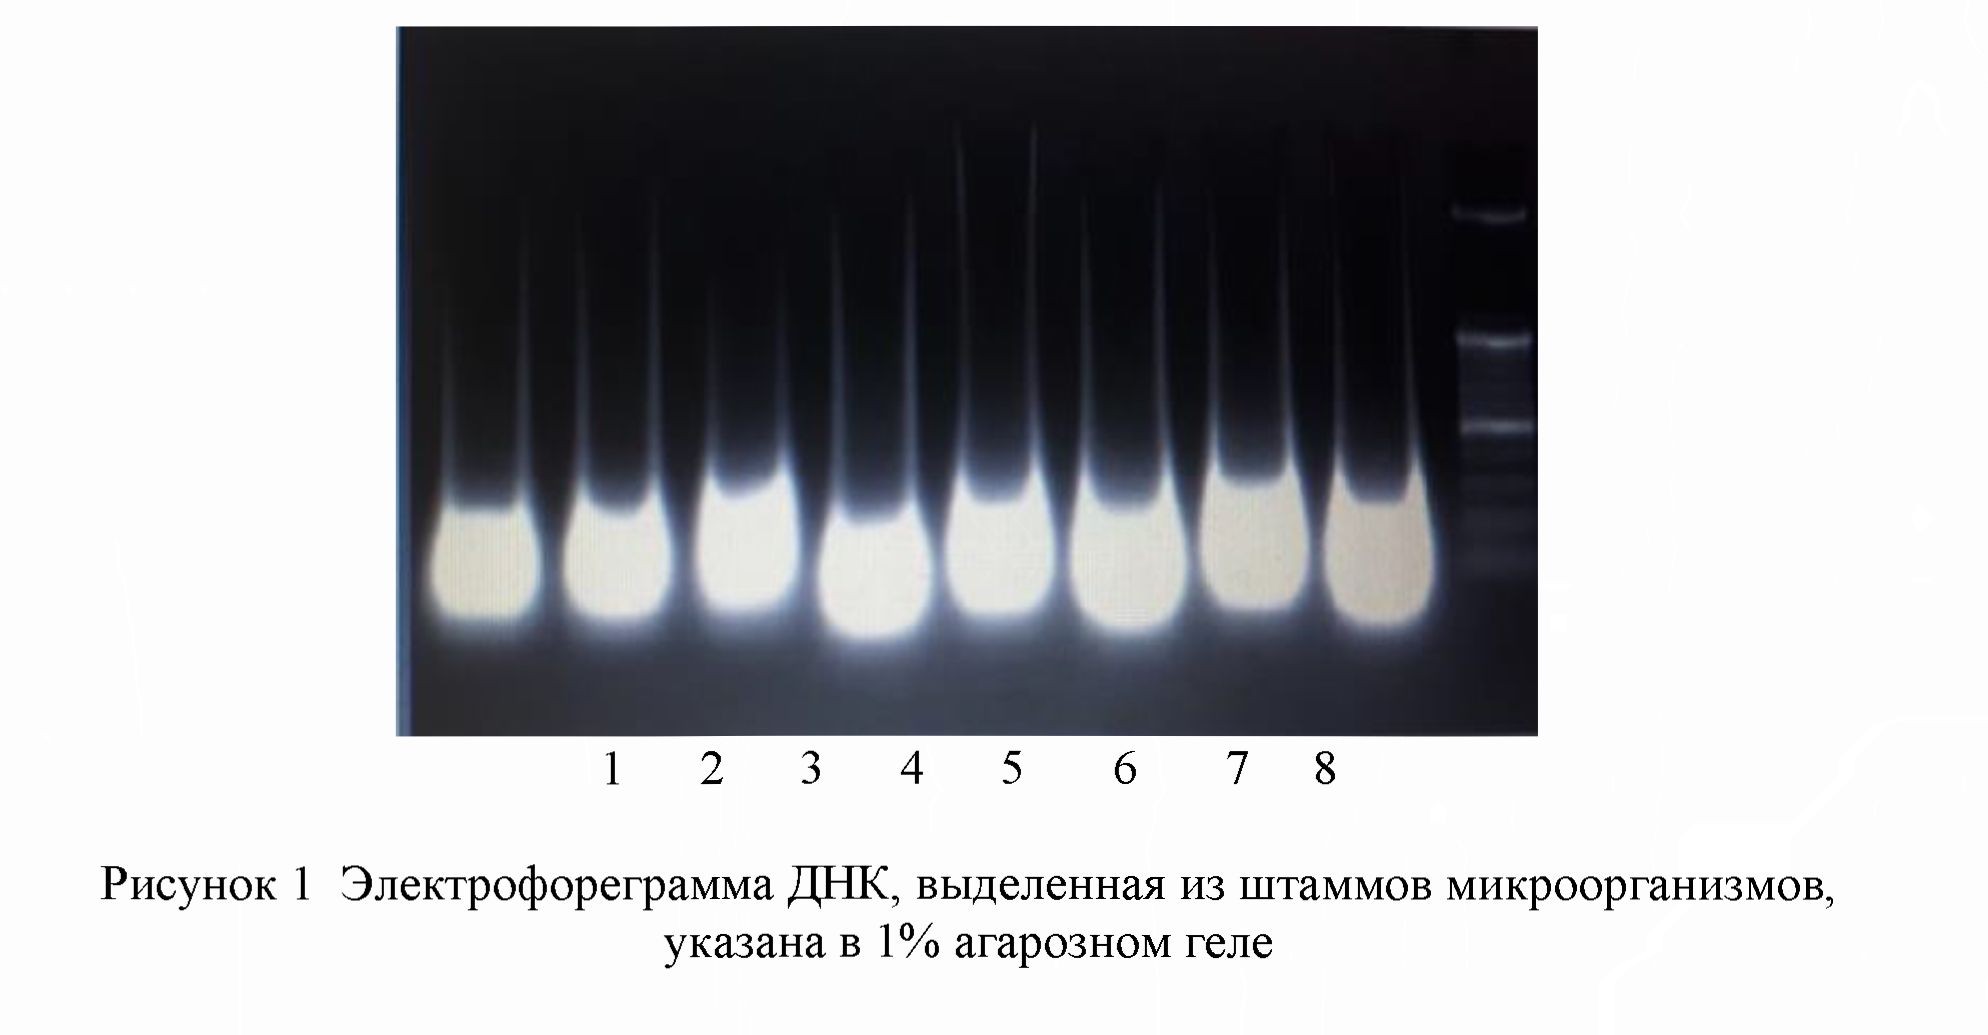 Классификация молочнокислых бактерий из растительного сырья южного региона Казахстана